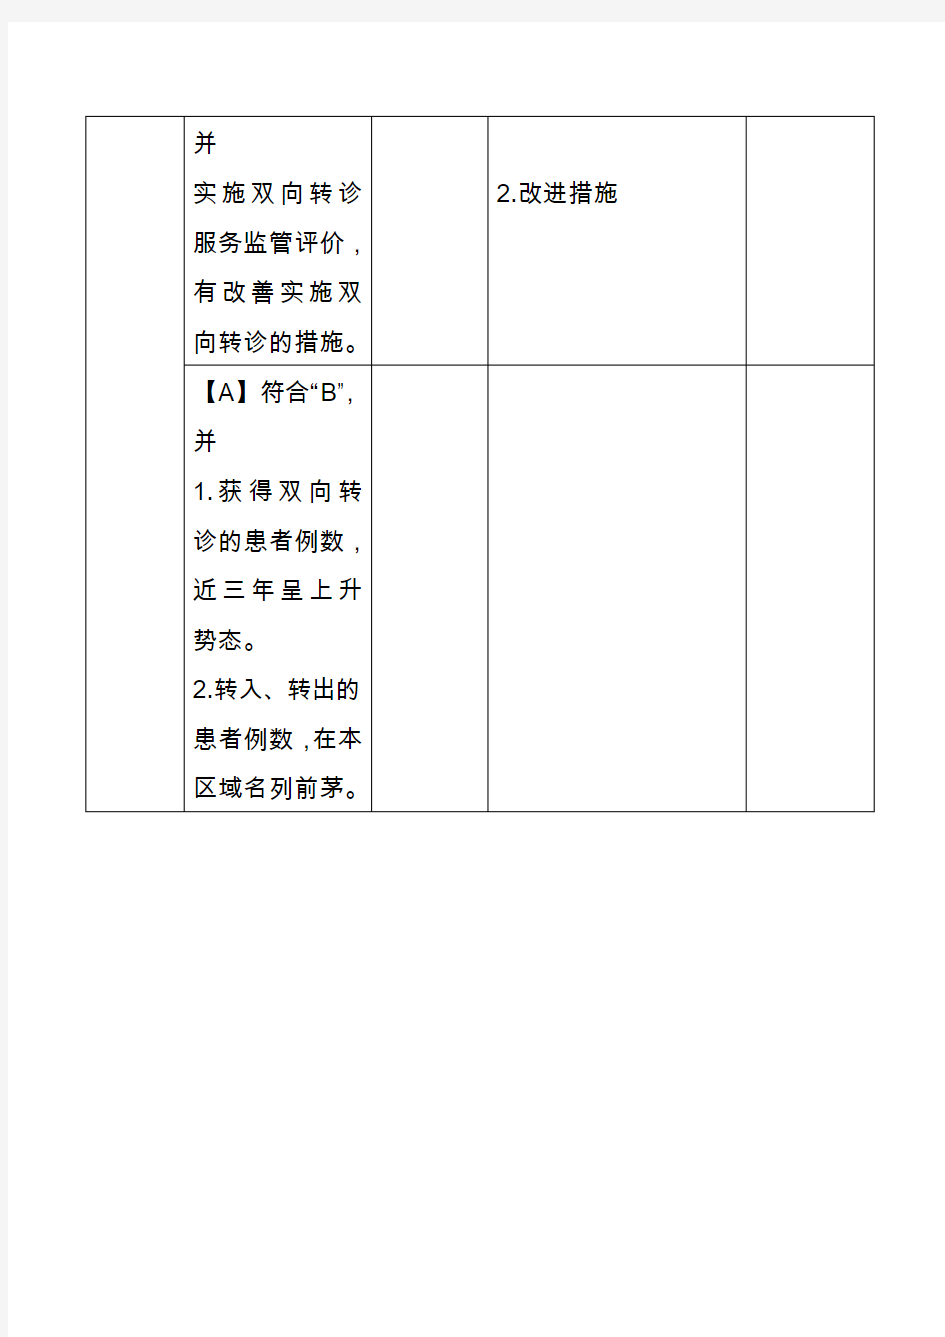 威信县人民医院等级评审支撑材料2.4.3.1